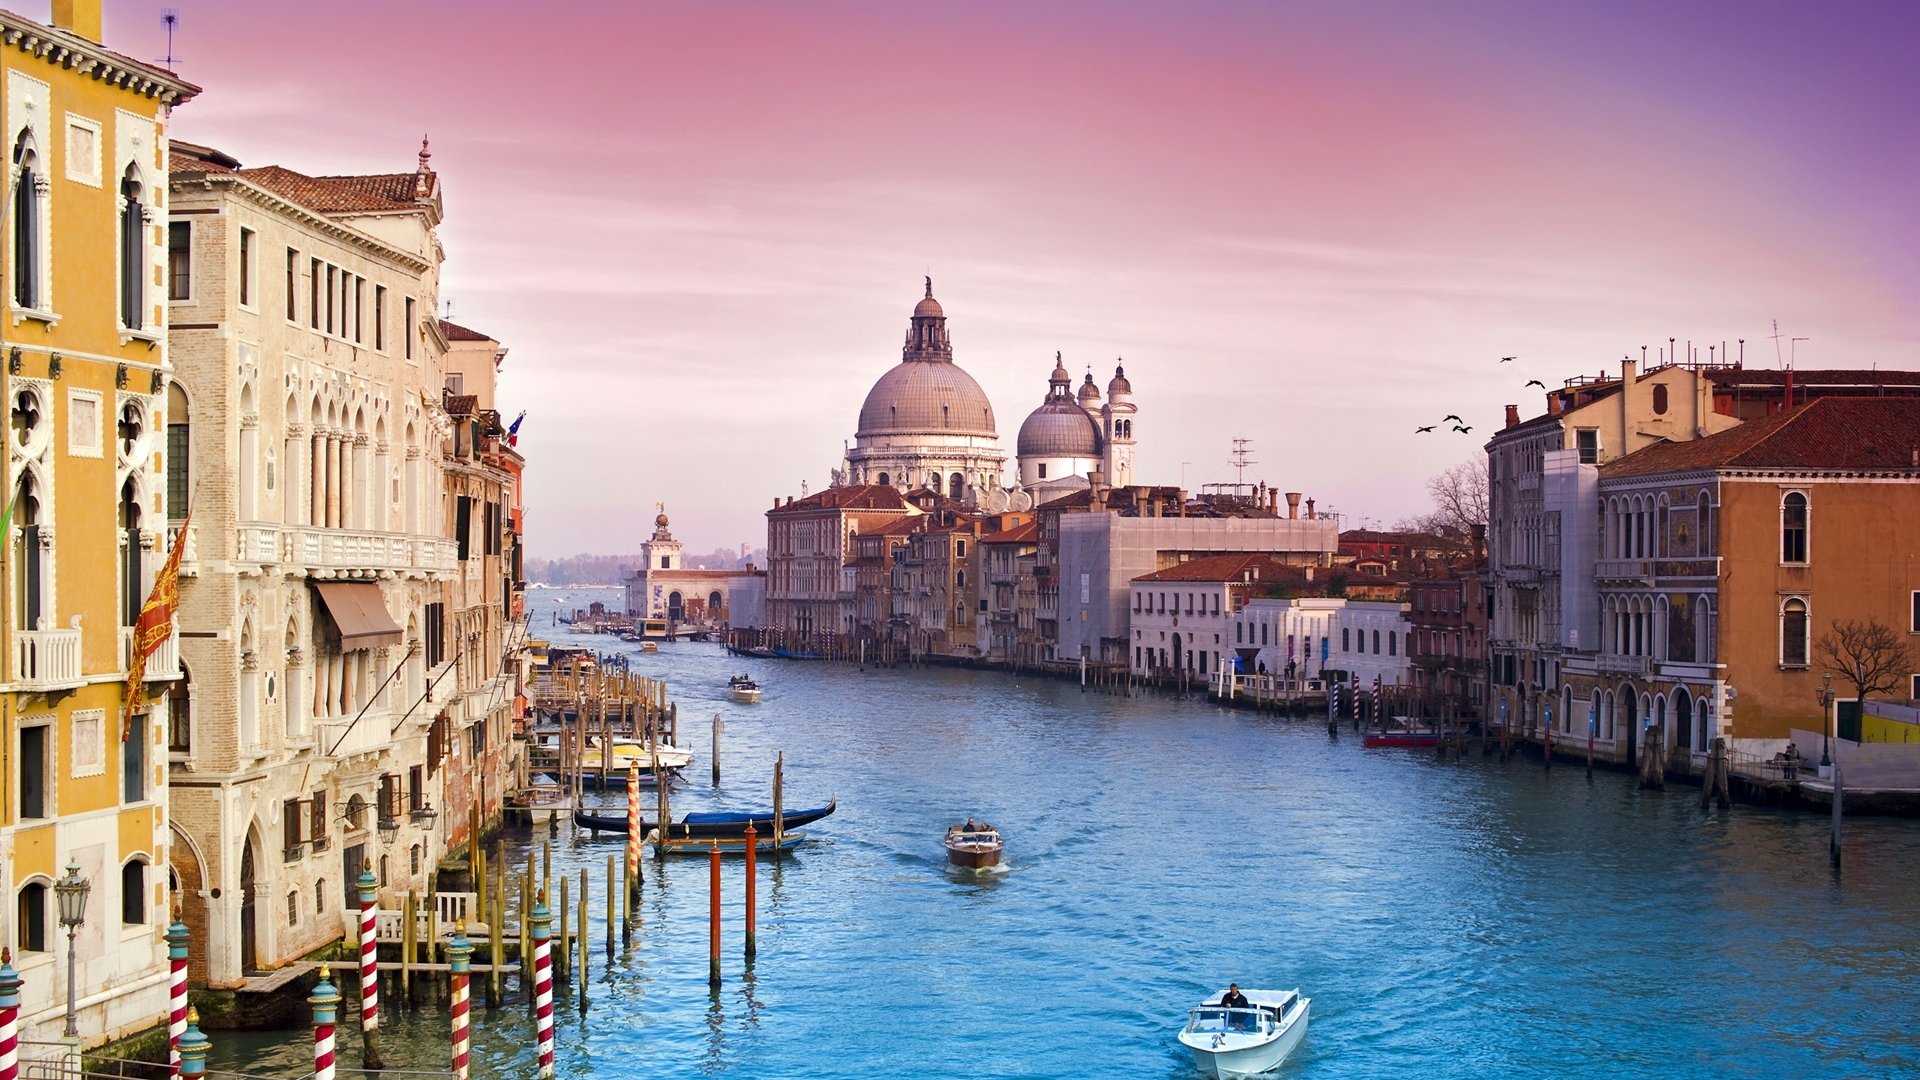 Venise, ou la Cité des Doges est sans aucun doute la ville la plus romantique au monde. Riche de son histoire elle garde un caché authentique qui en fait également l'une des destinations les plus touristiques d'Italie
